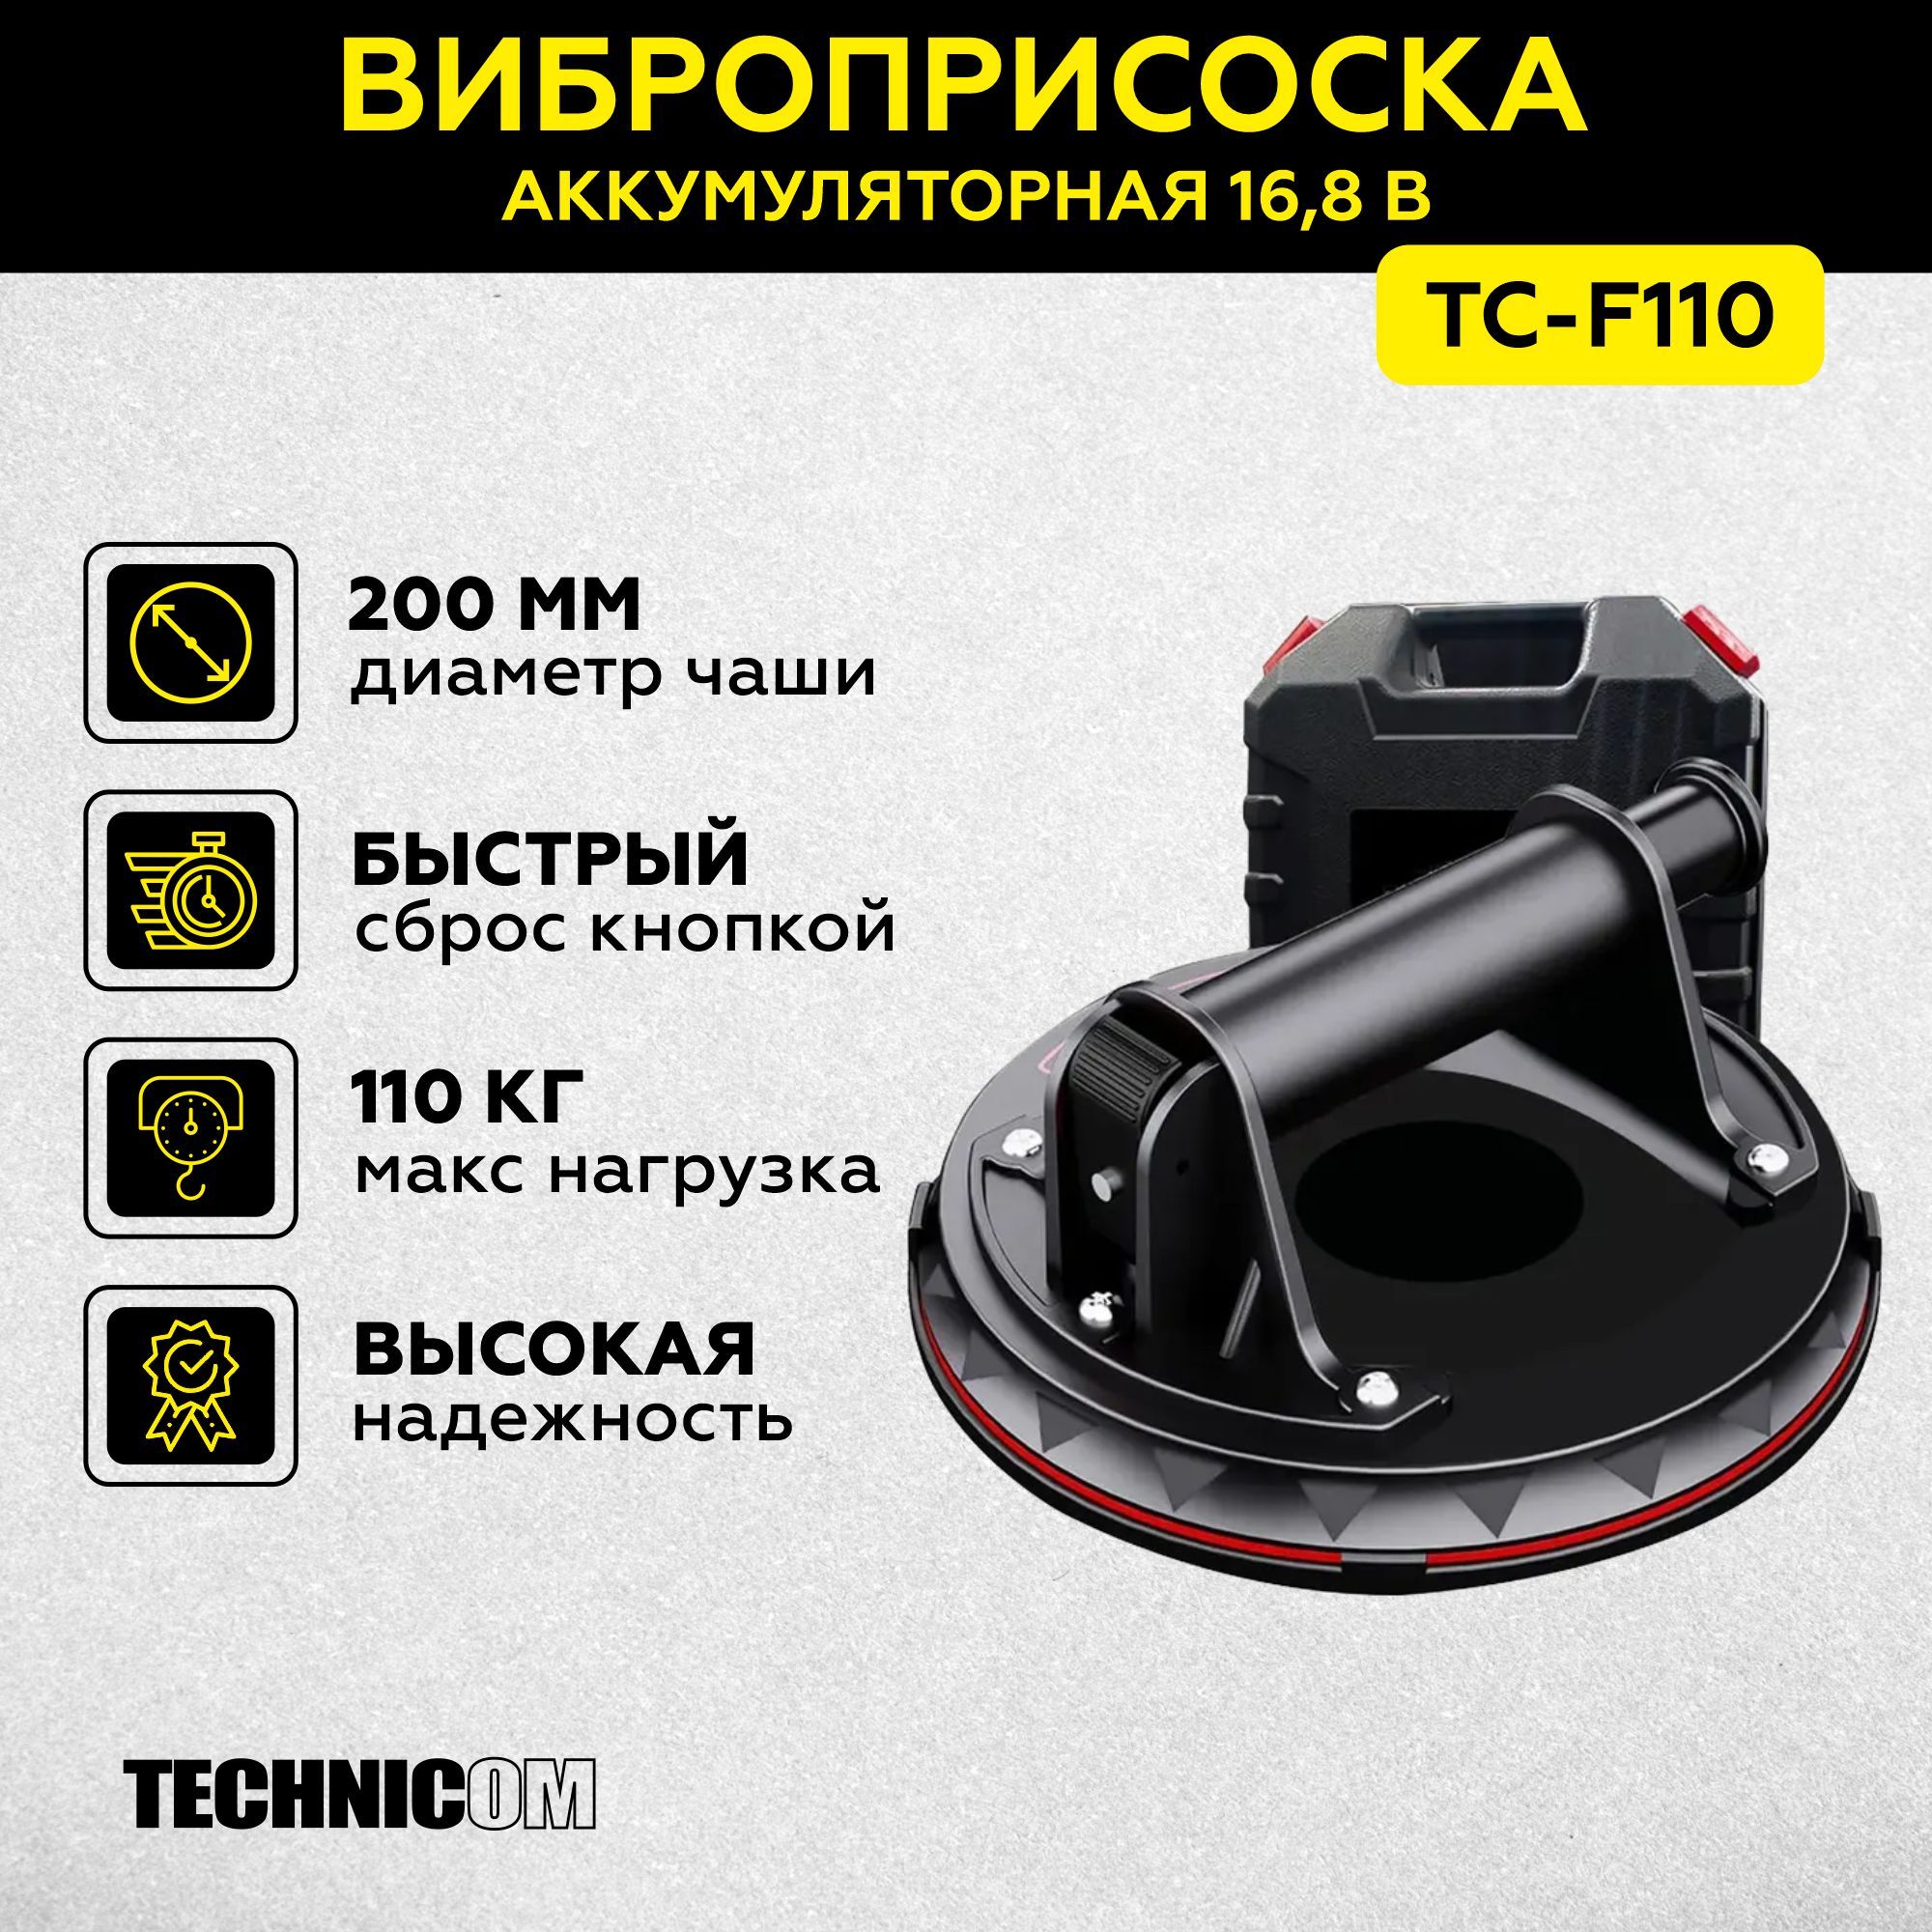 Присоска с ручной помпой TECHNICOM 110кг TC-F110